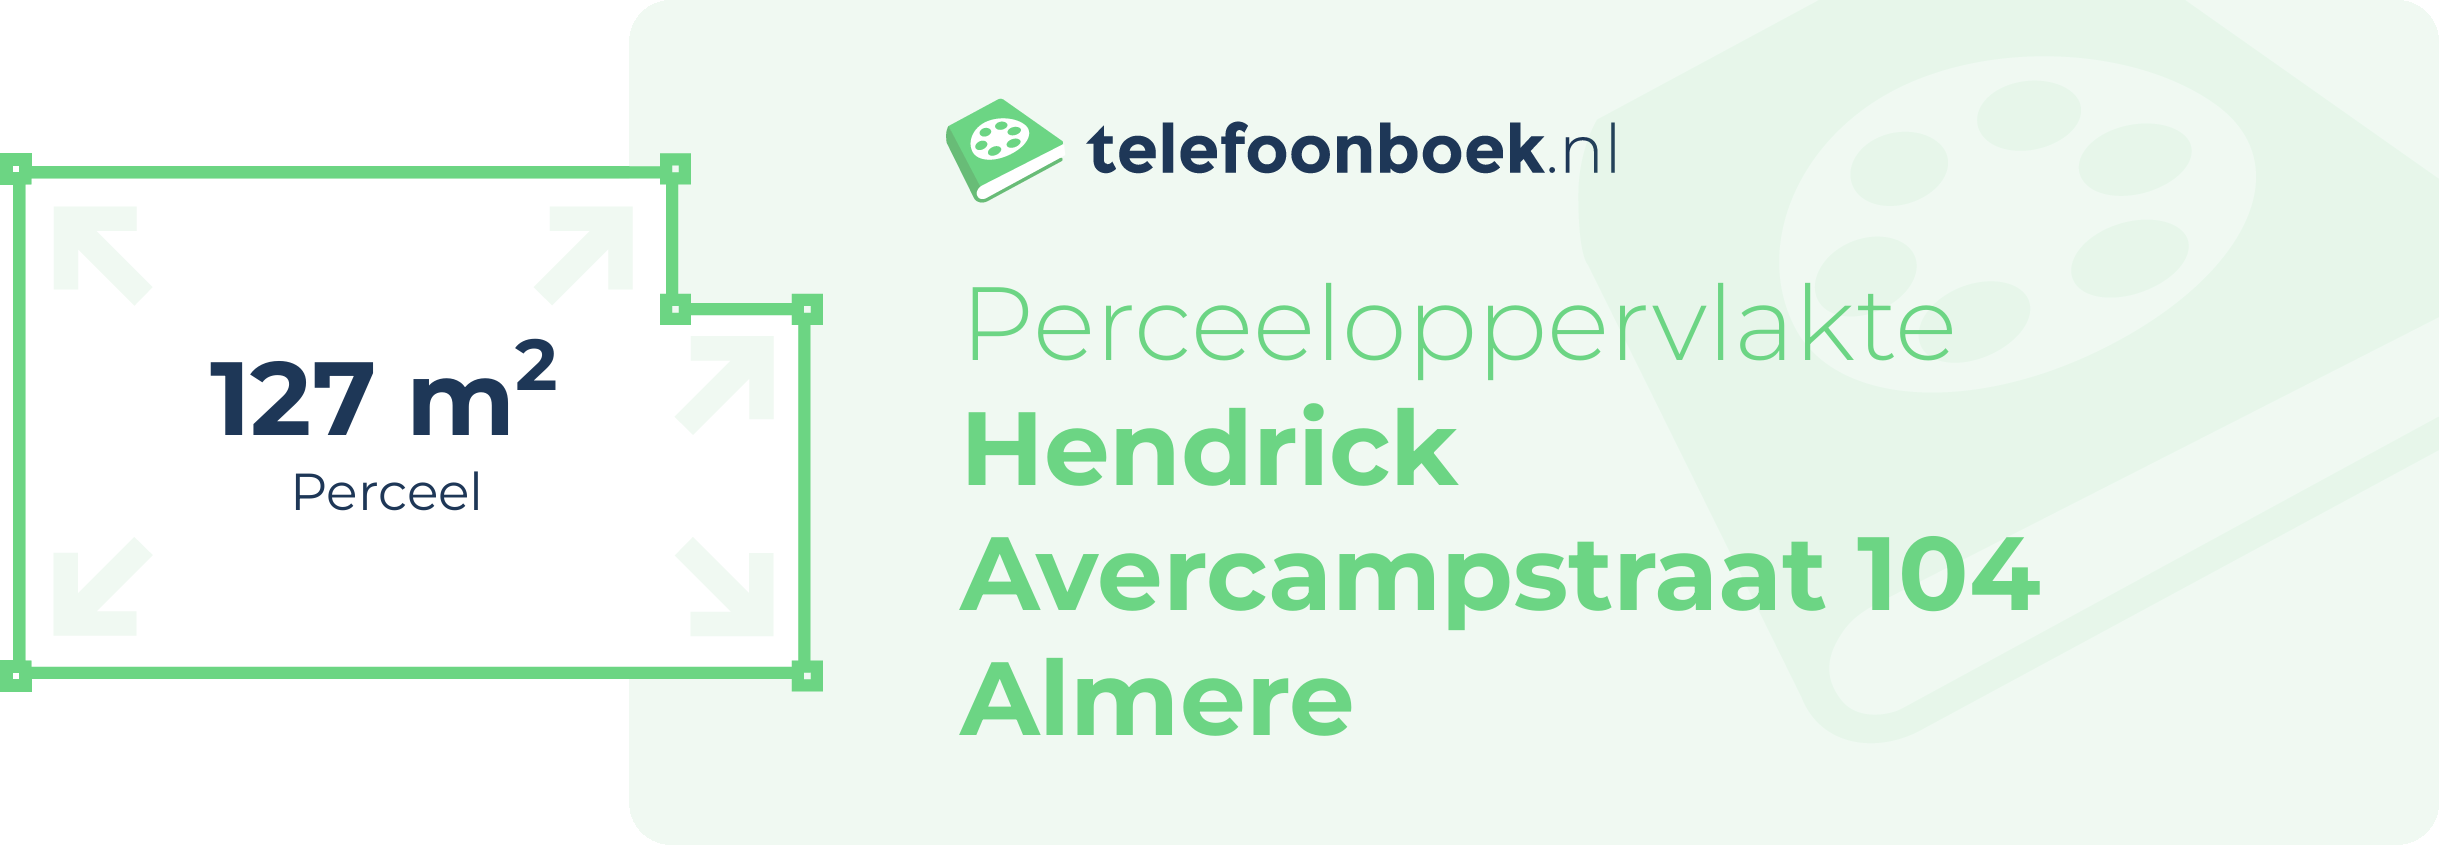 Perceeloppervlakte Hendrick Avercampstraat 104 Almere